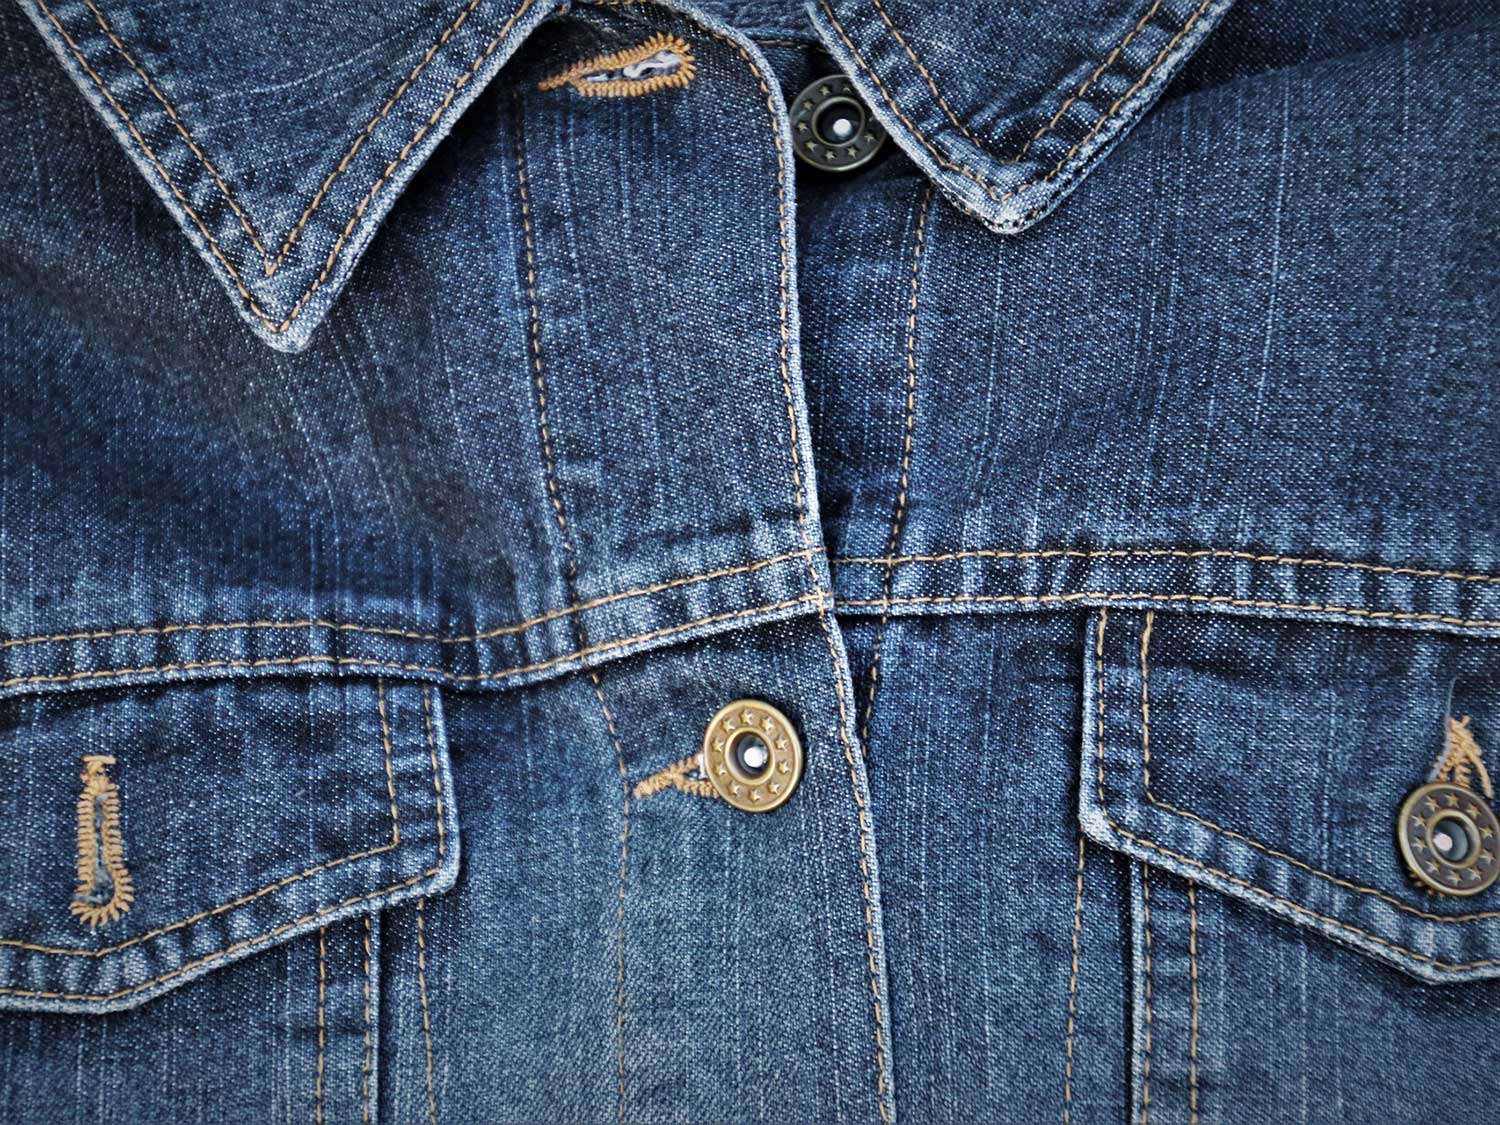 Closeup of a denim jacket